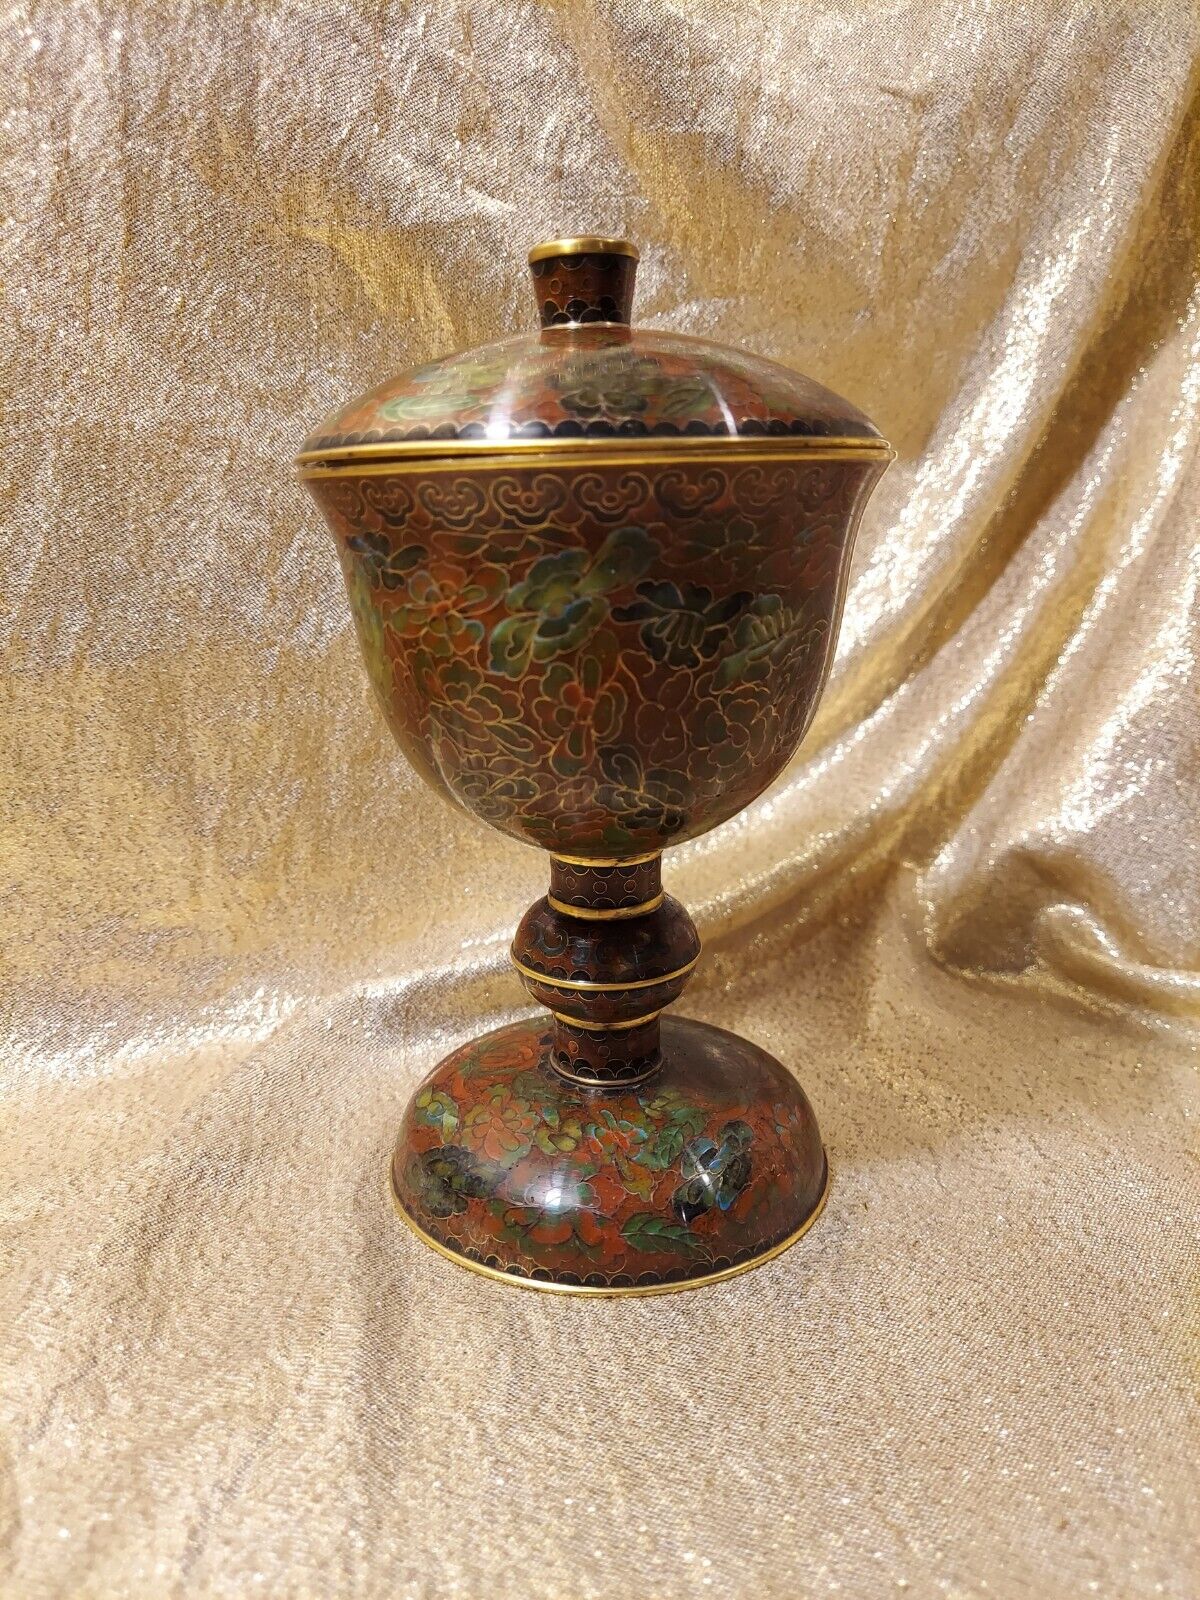 Vintage Cloisonne Enamel Covered Metal Flower Goblet Urn Chalice Covered Jar